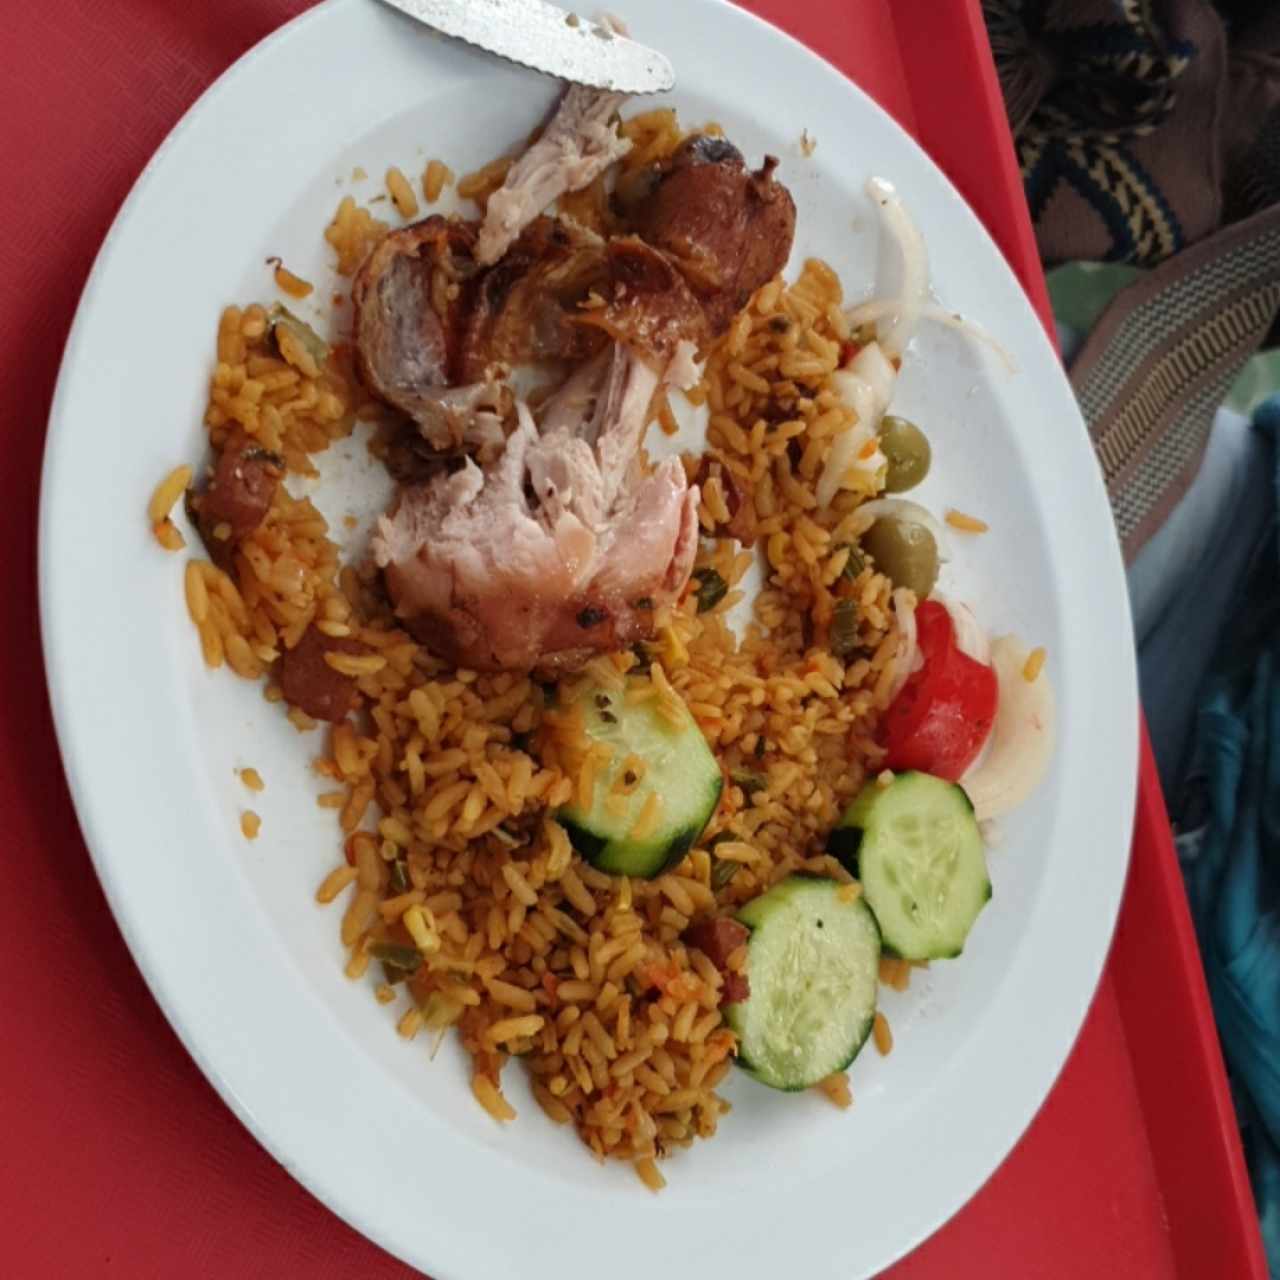 arroz combinación pollo asado y ensalada pepino